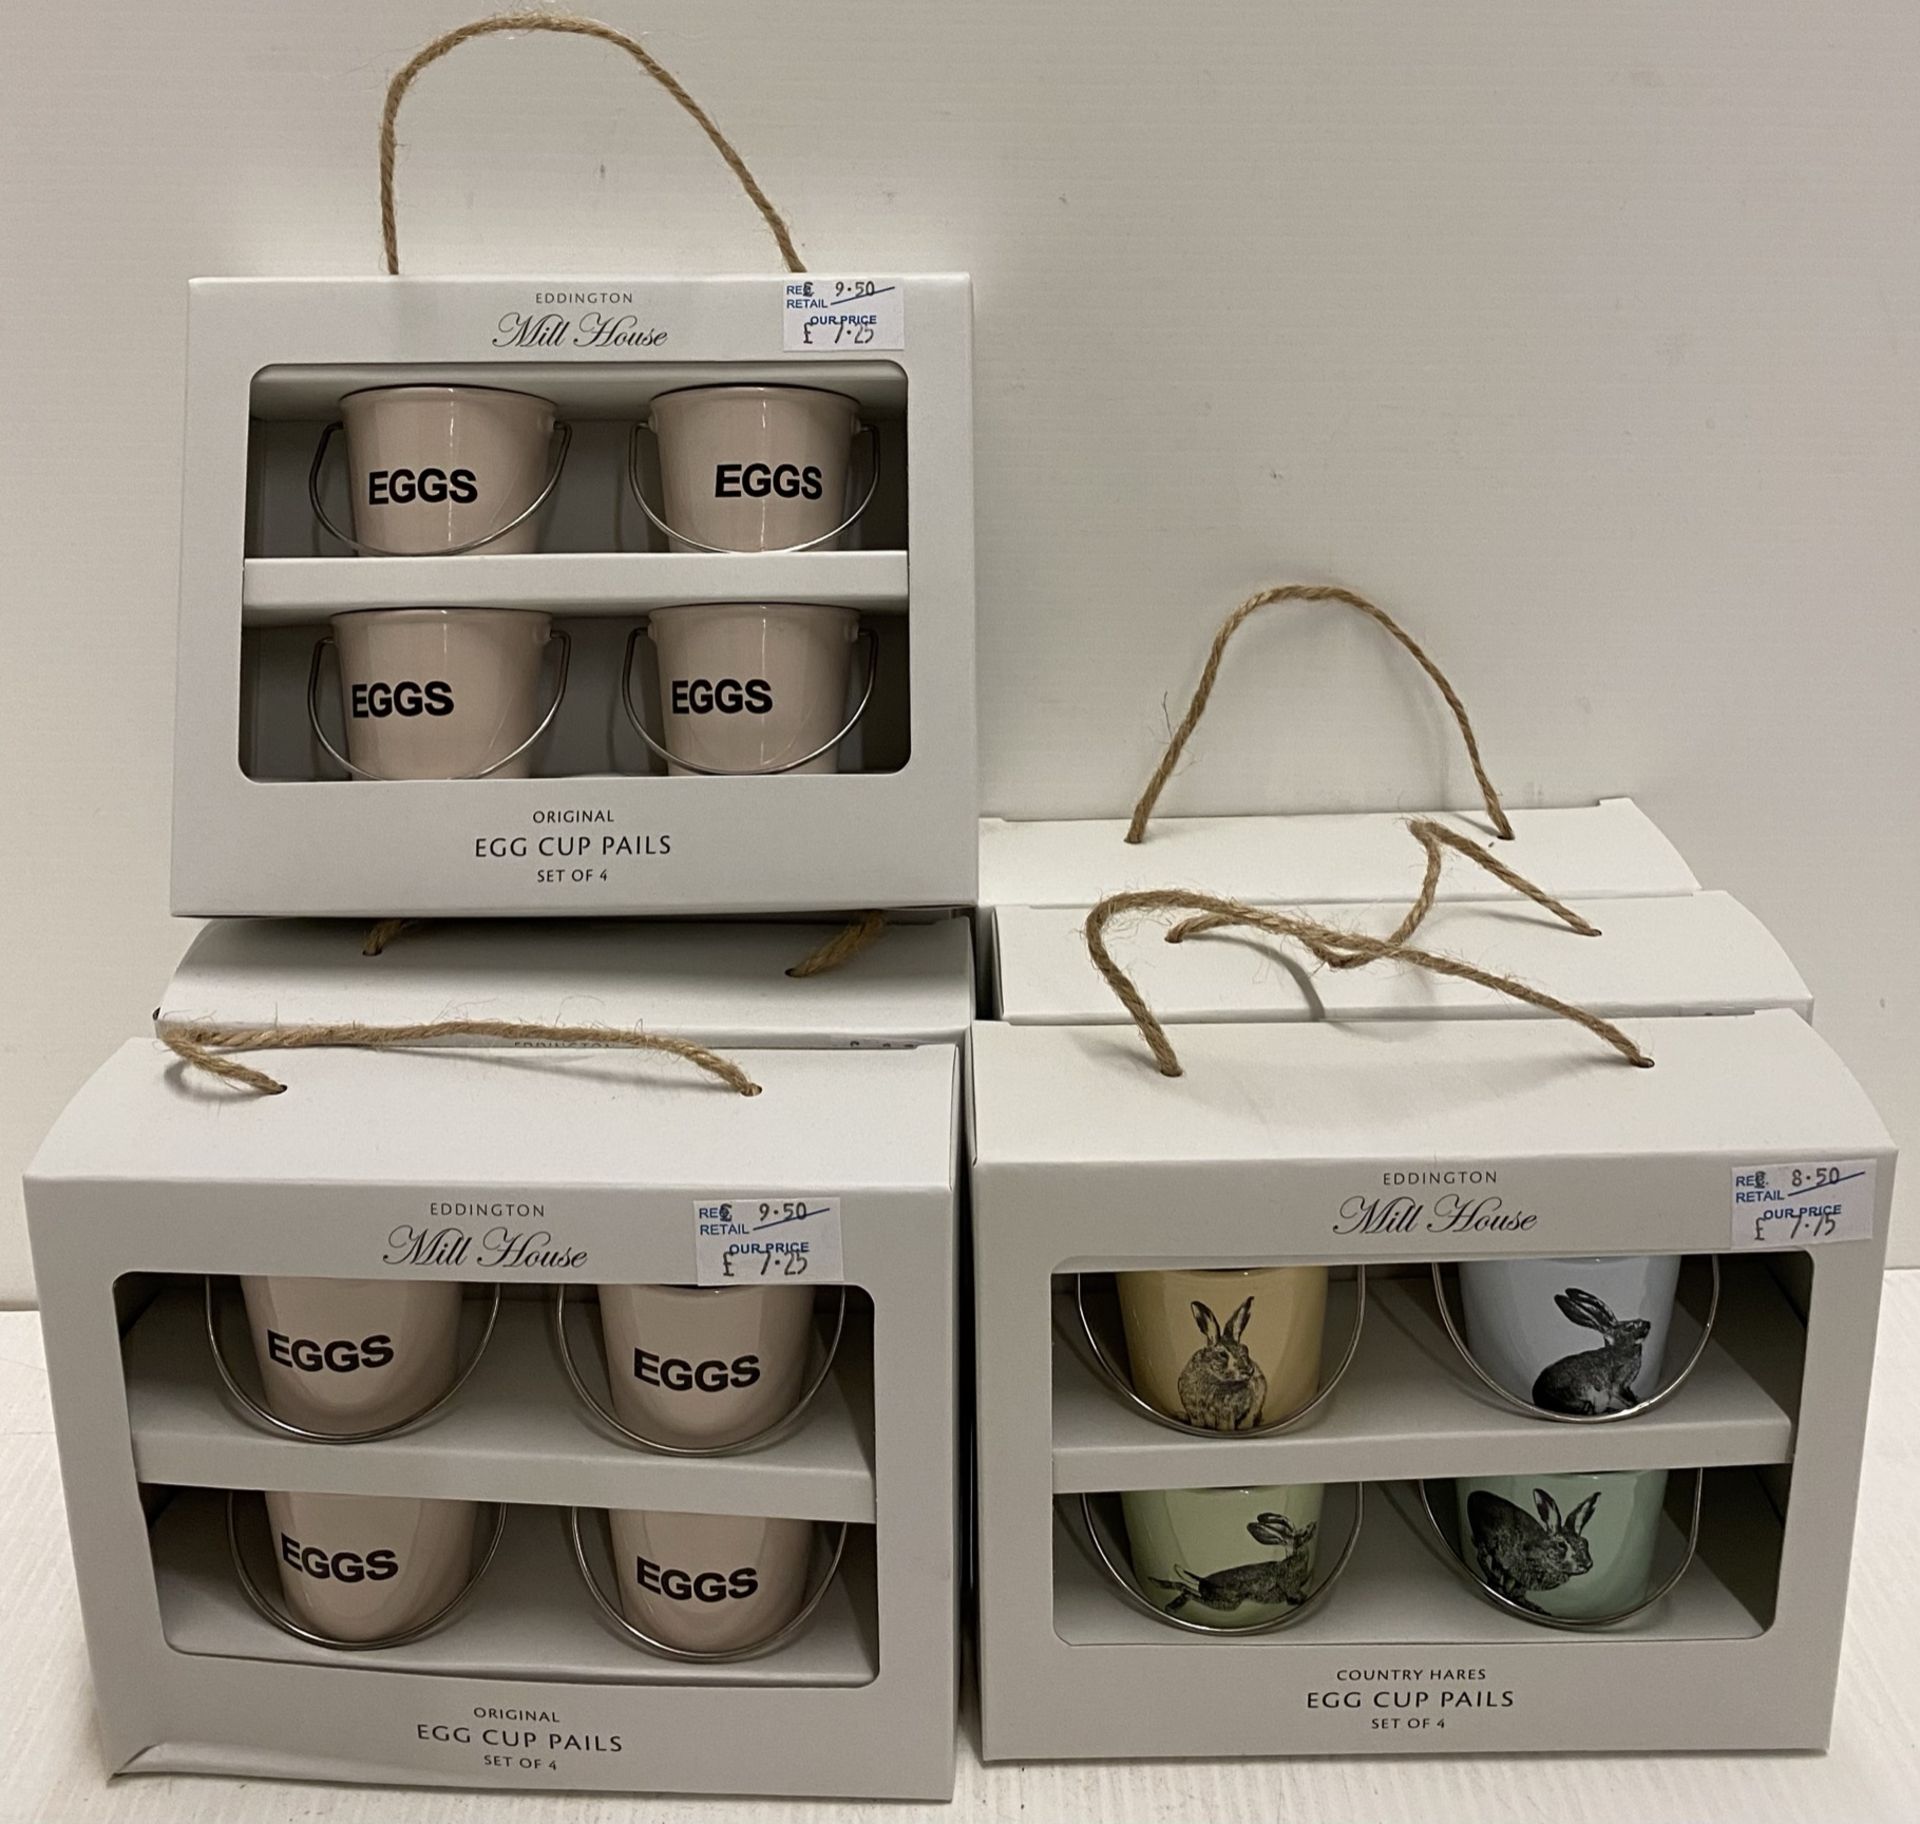 7 x Eddingtons Millhouse sets of 4 egg cup pails